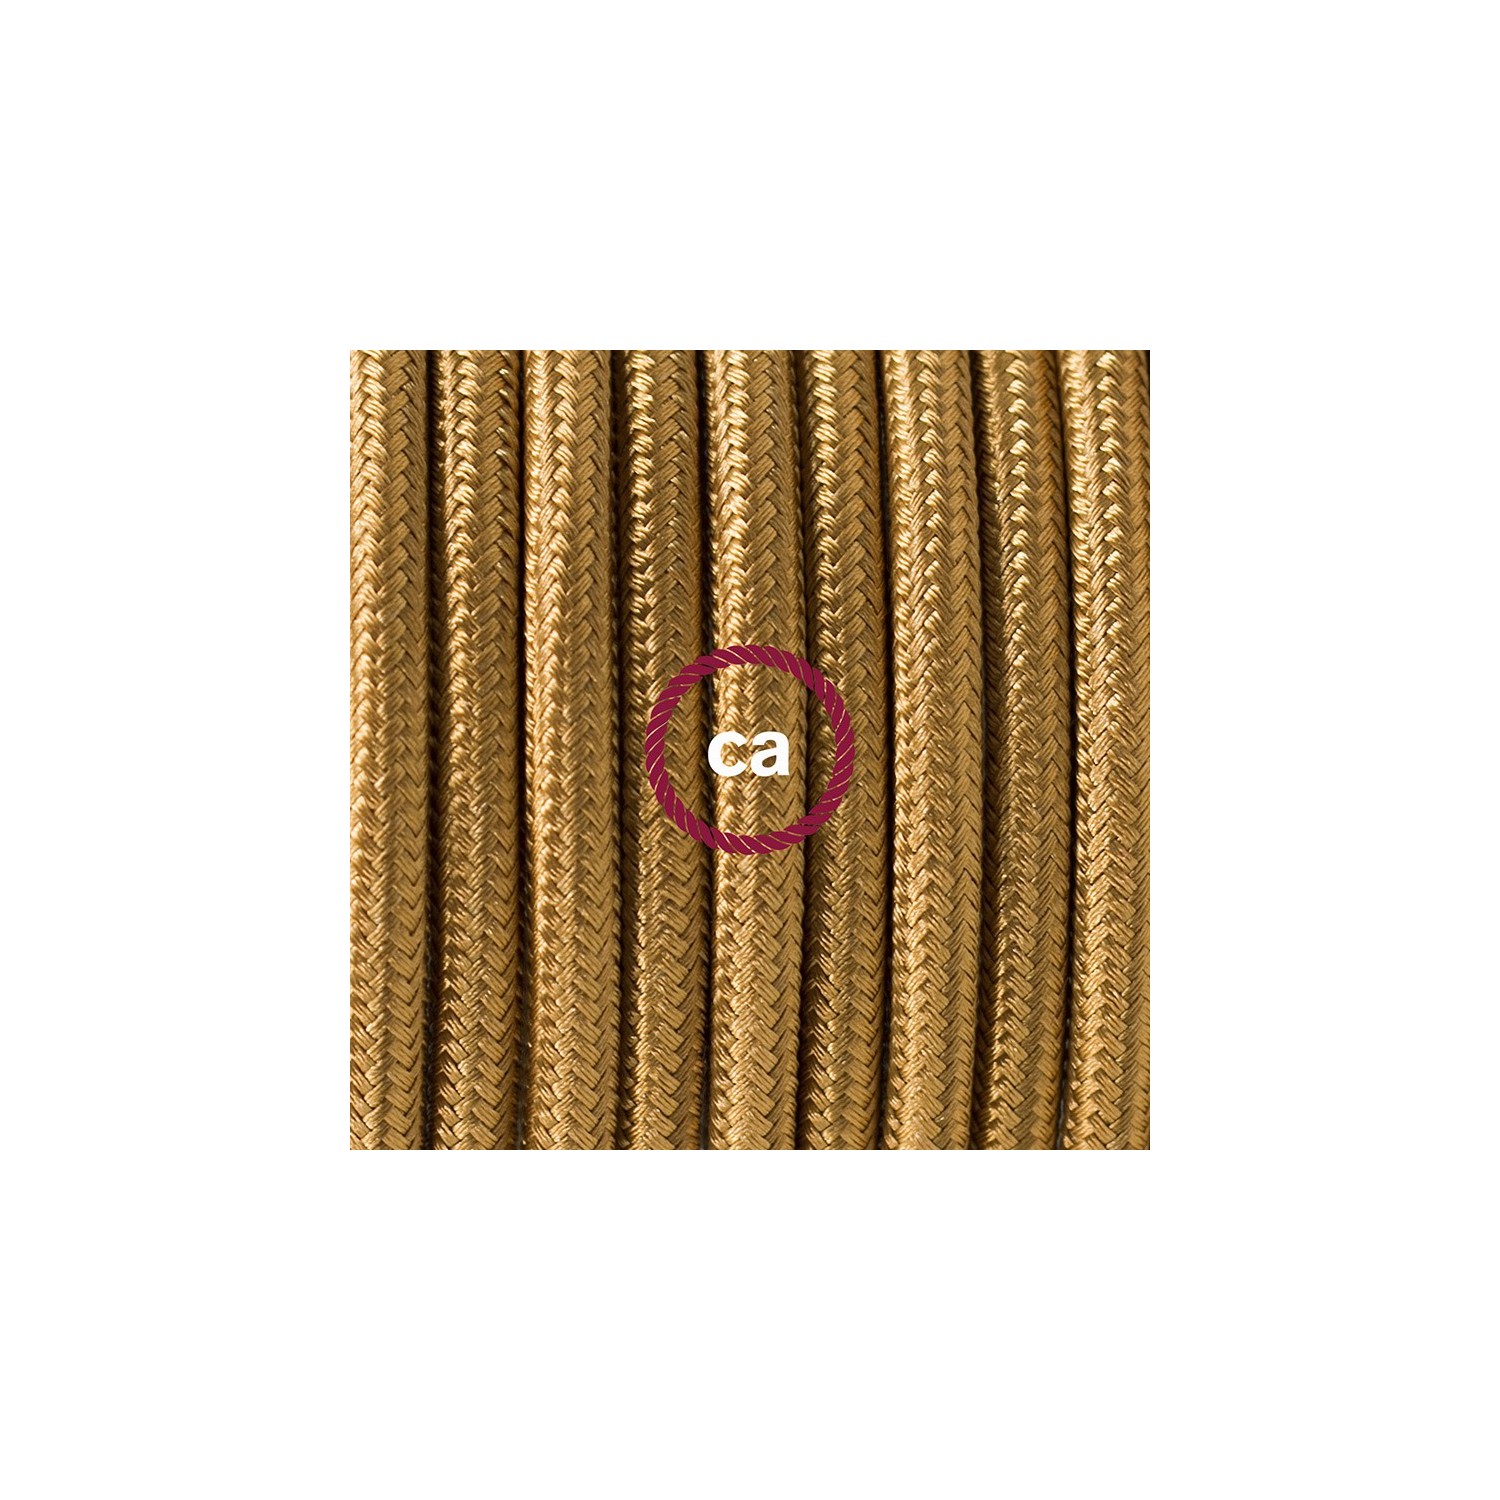 Zuleitung für Tischleuchten RM05 Gold Seideneffekt 1,80 m. Wählen Sie aus drei Farben bei Schalter und Stecke.